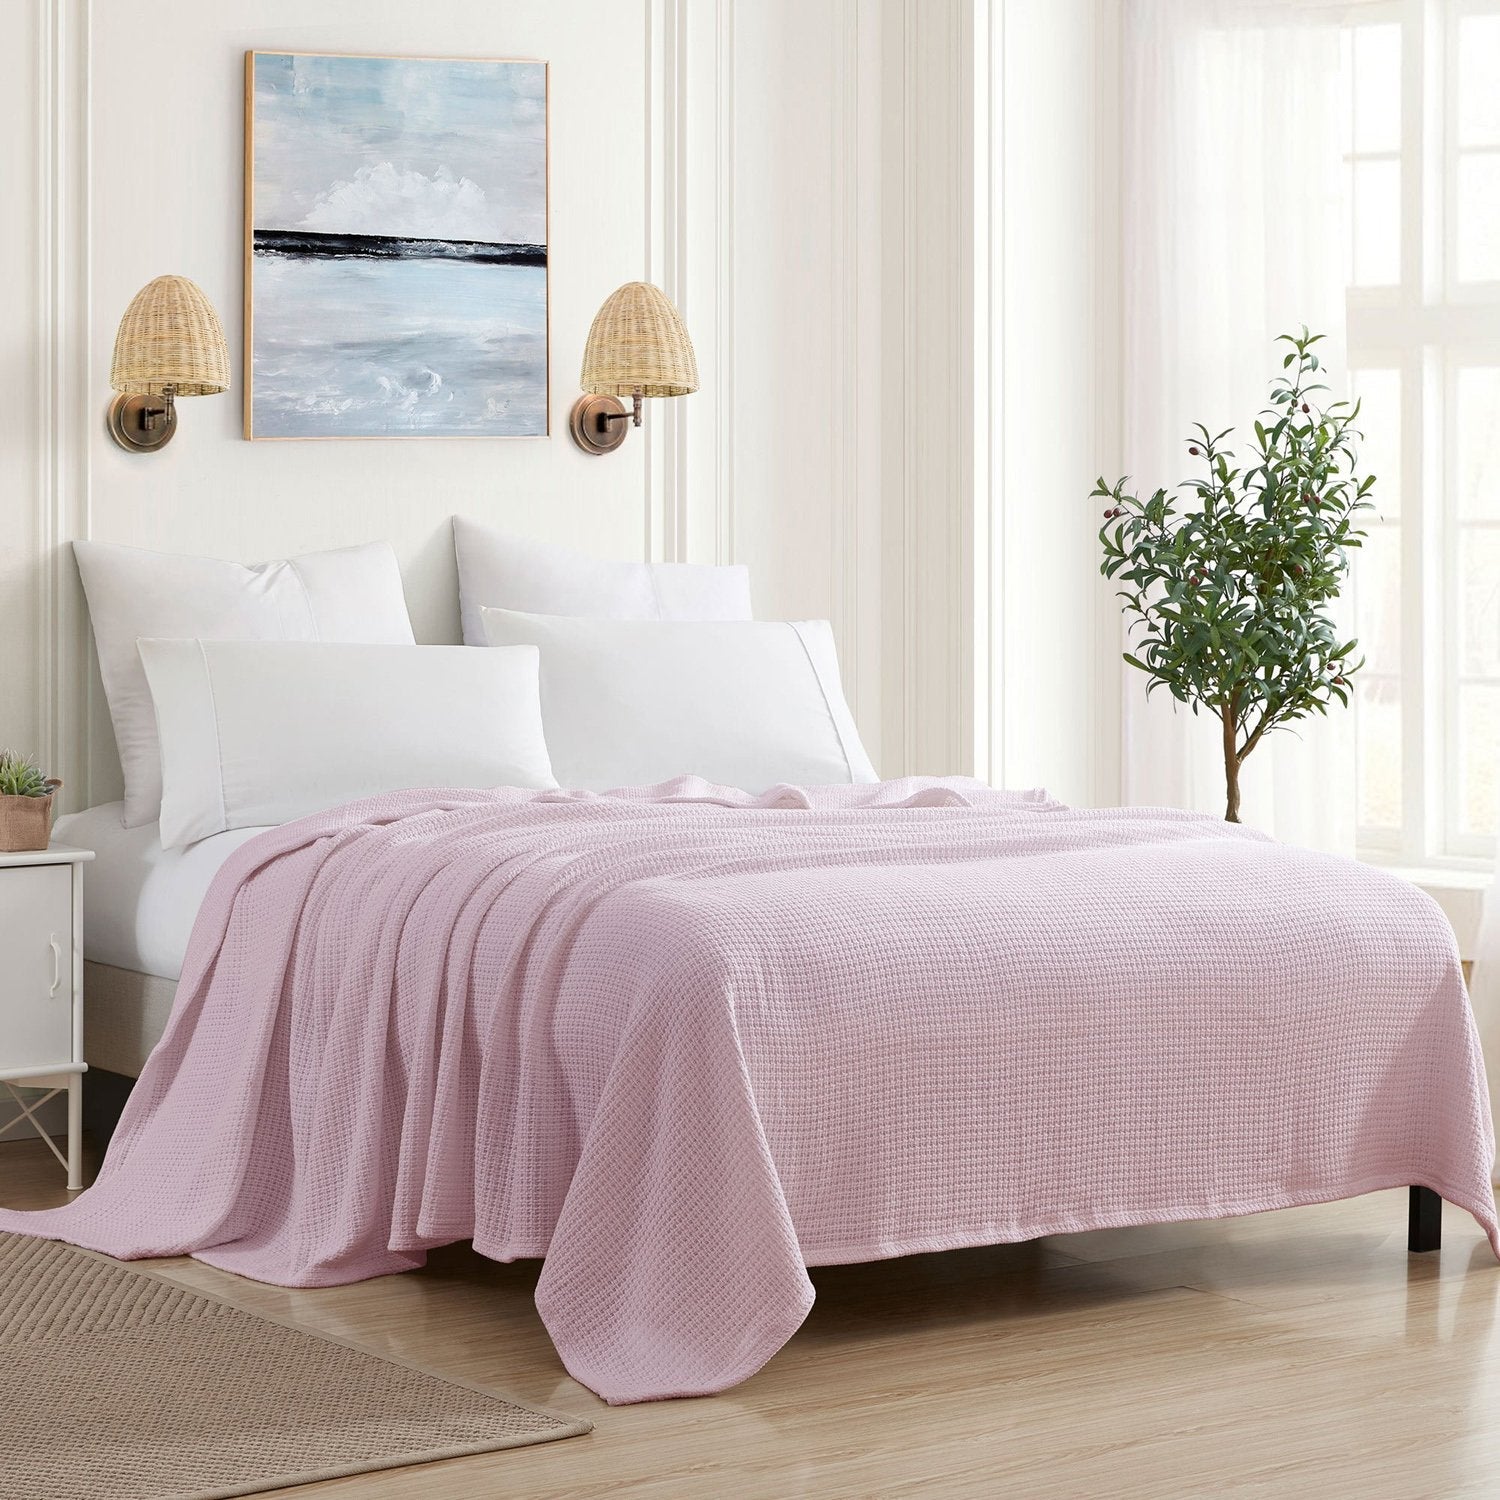 Basket Weave Cotton Blanket Pink - Bed